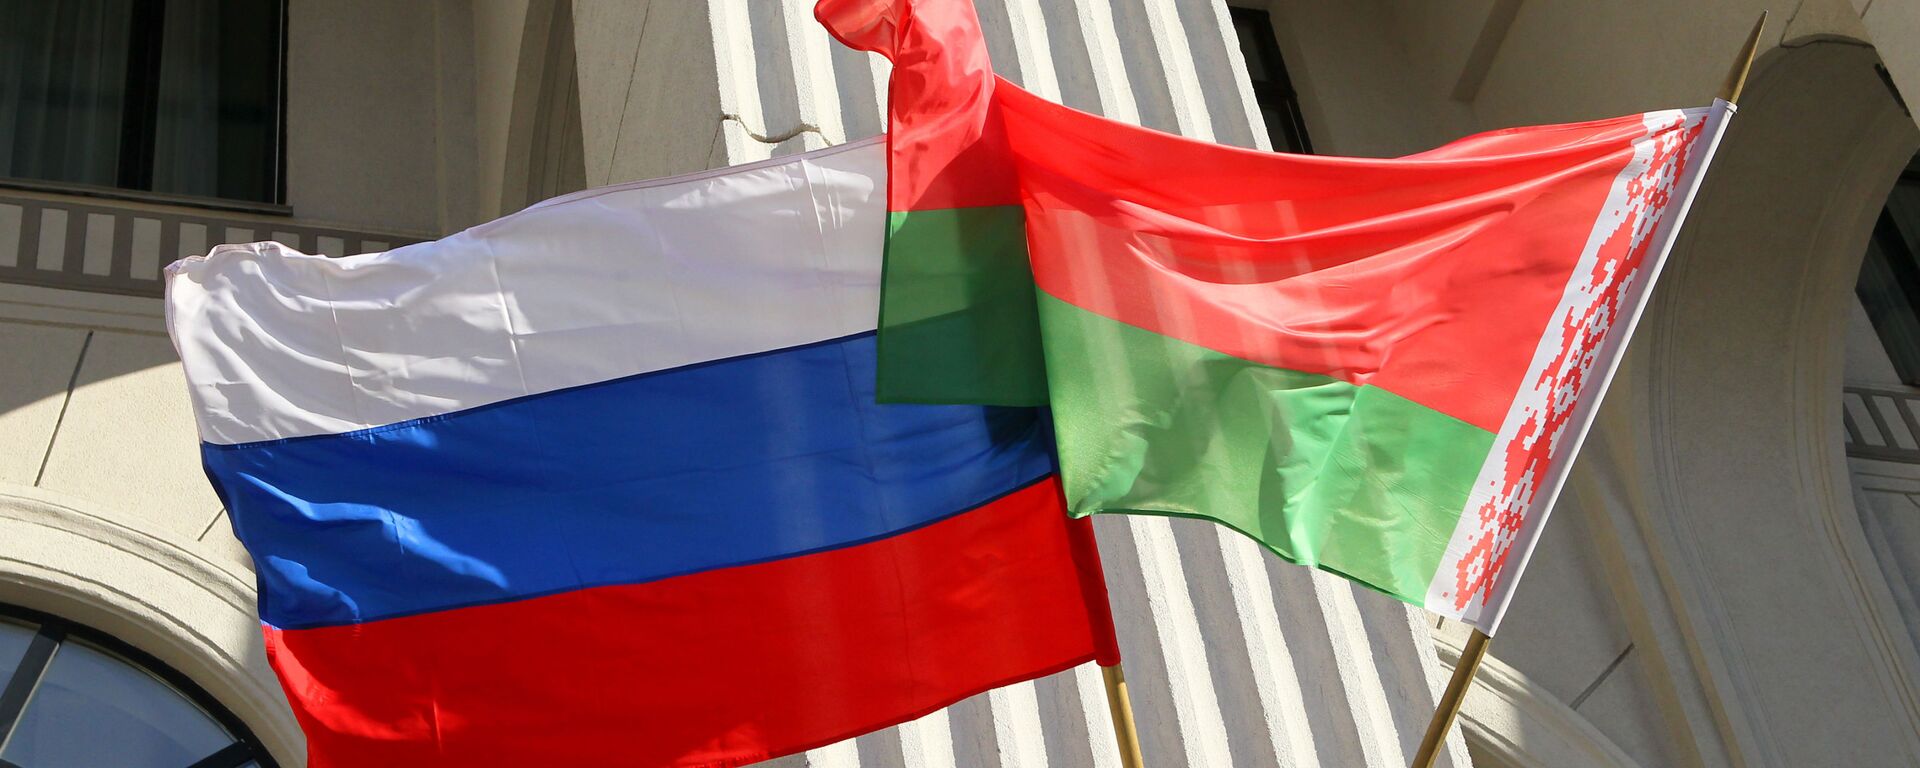 Zastave Rusije i Belorusije - Sputnik Srbija, 1920, 12.09.2021